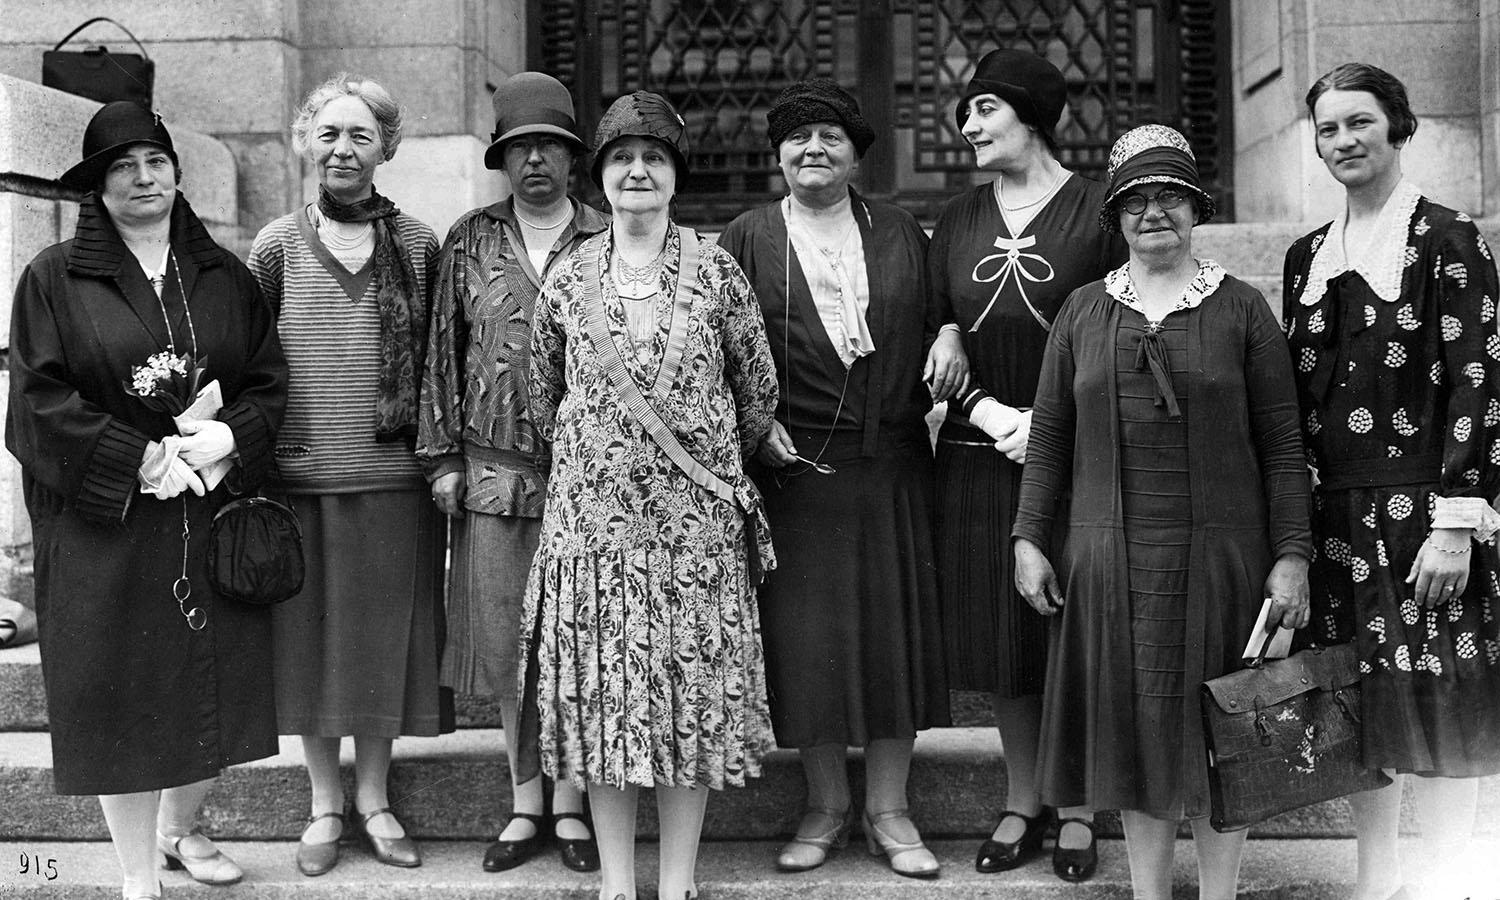 12° Sessione della Conferenza internazionale del lavoro, Delegate donne, Archivi storici OIL, 1928.